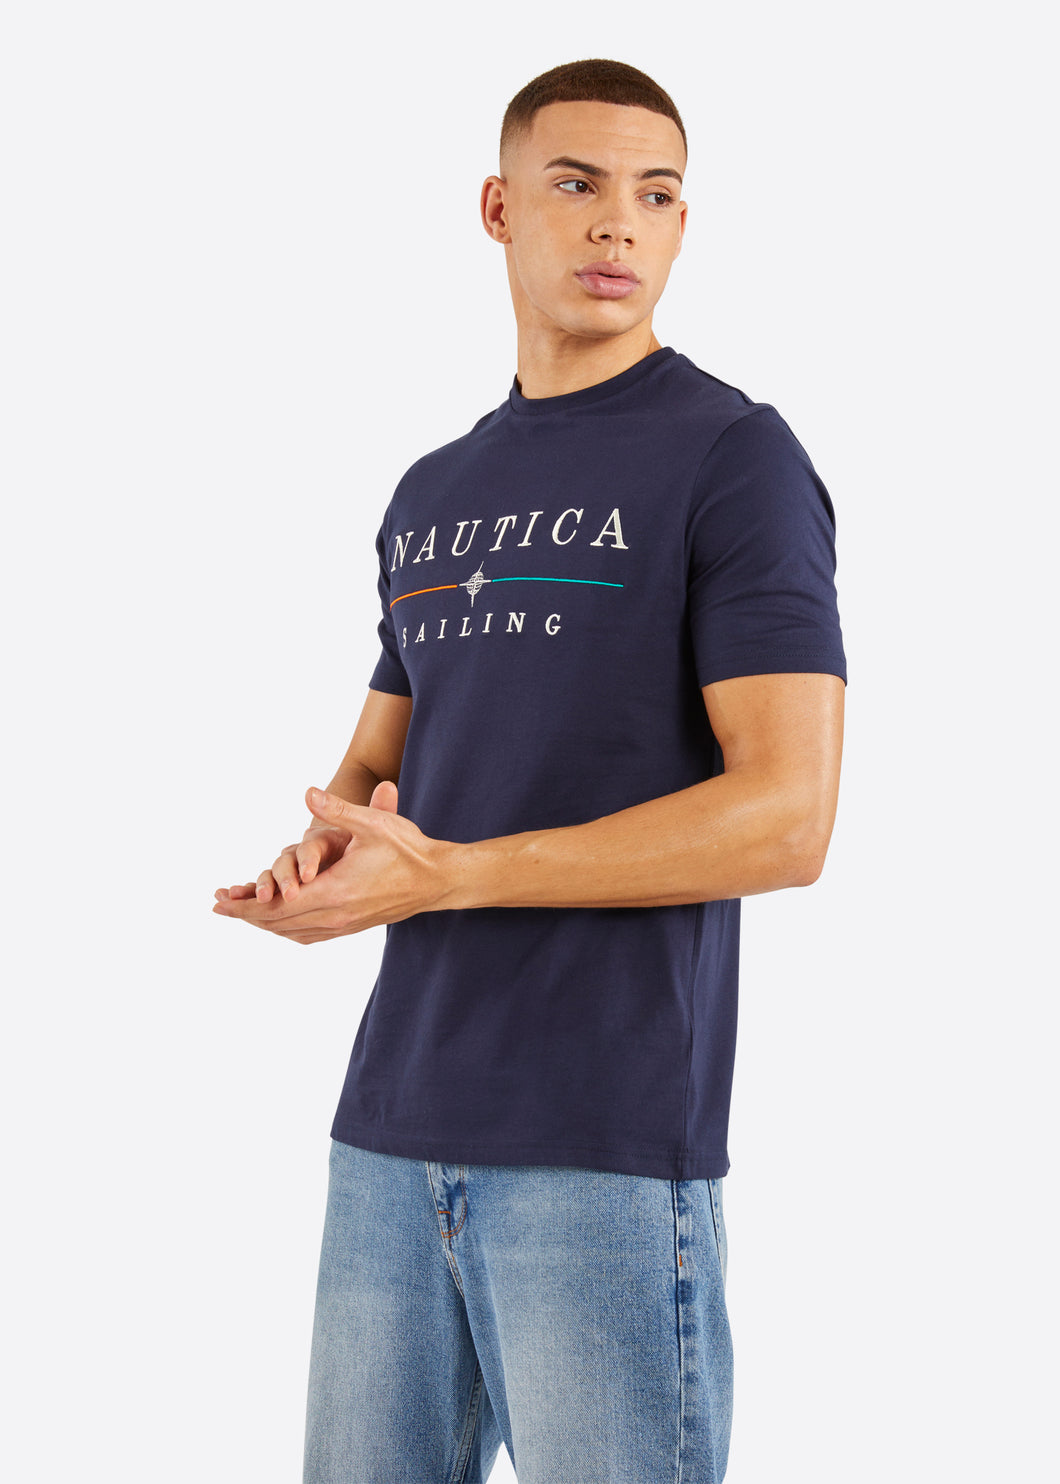 Nautica Mateo T-Shirt - Dark Navy - Front